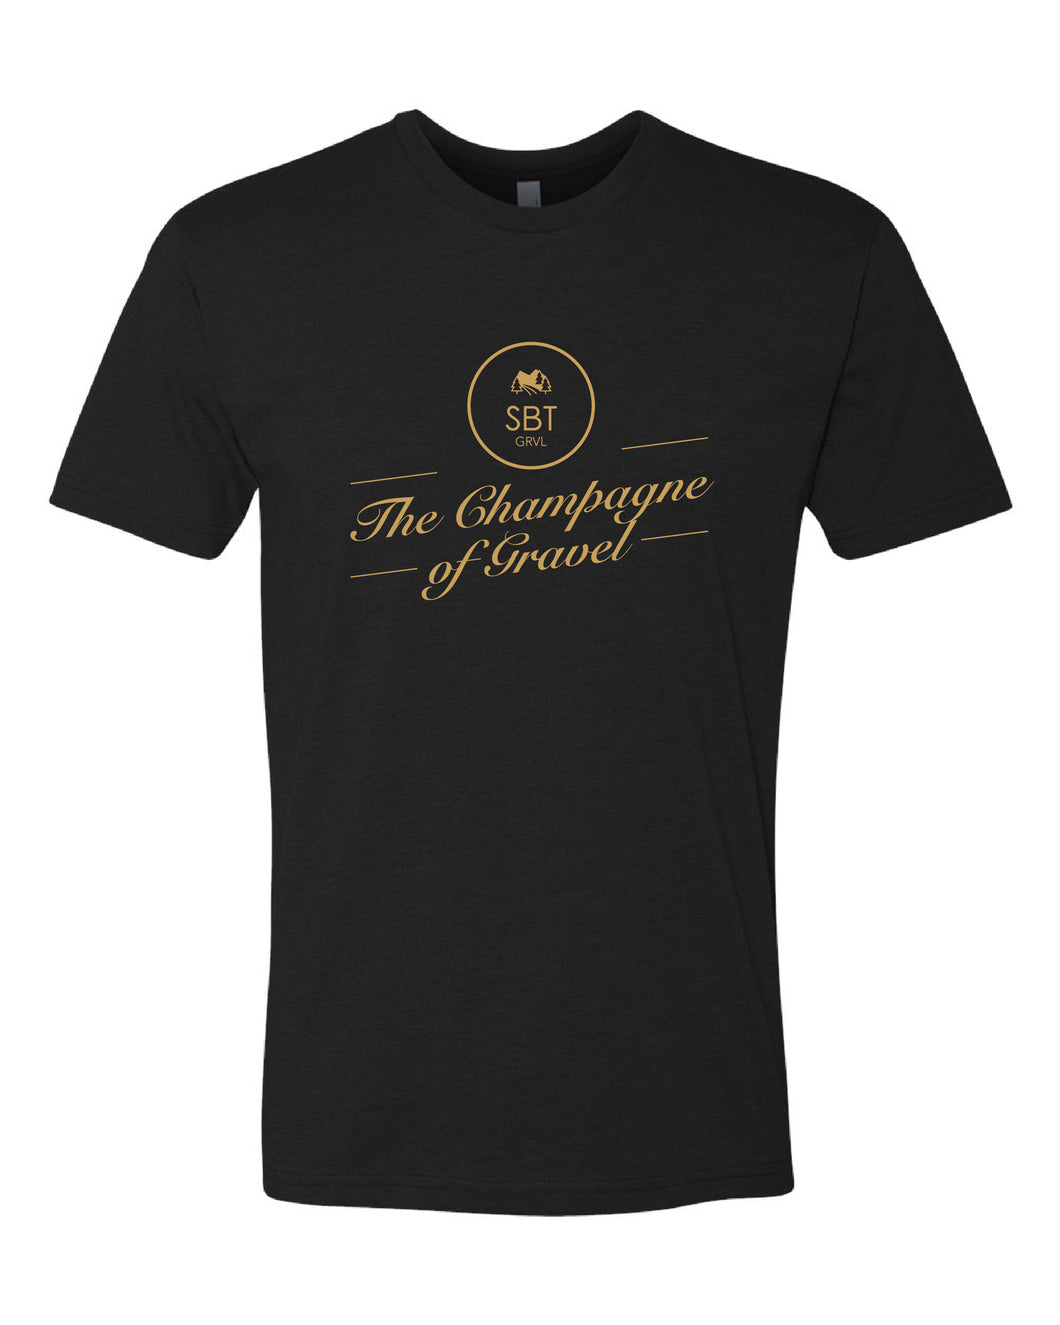 Champagne of Gravel Men's t-shirt – SBT GRVL